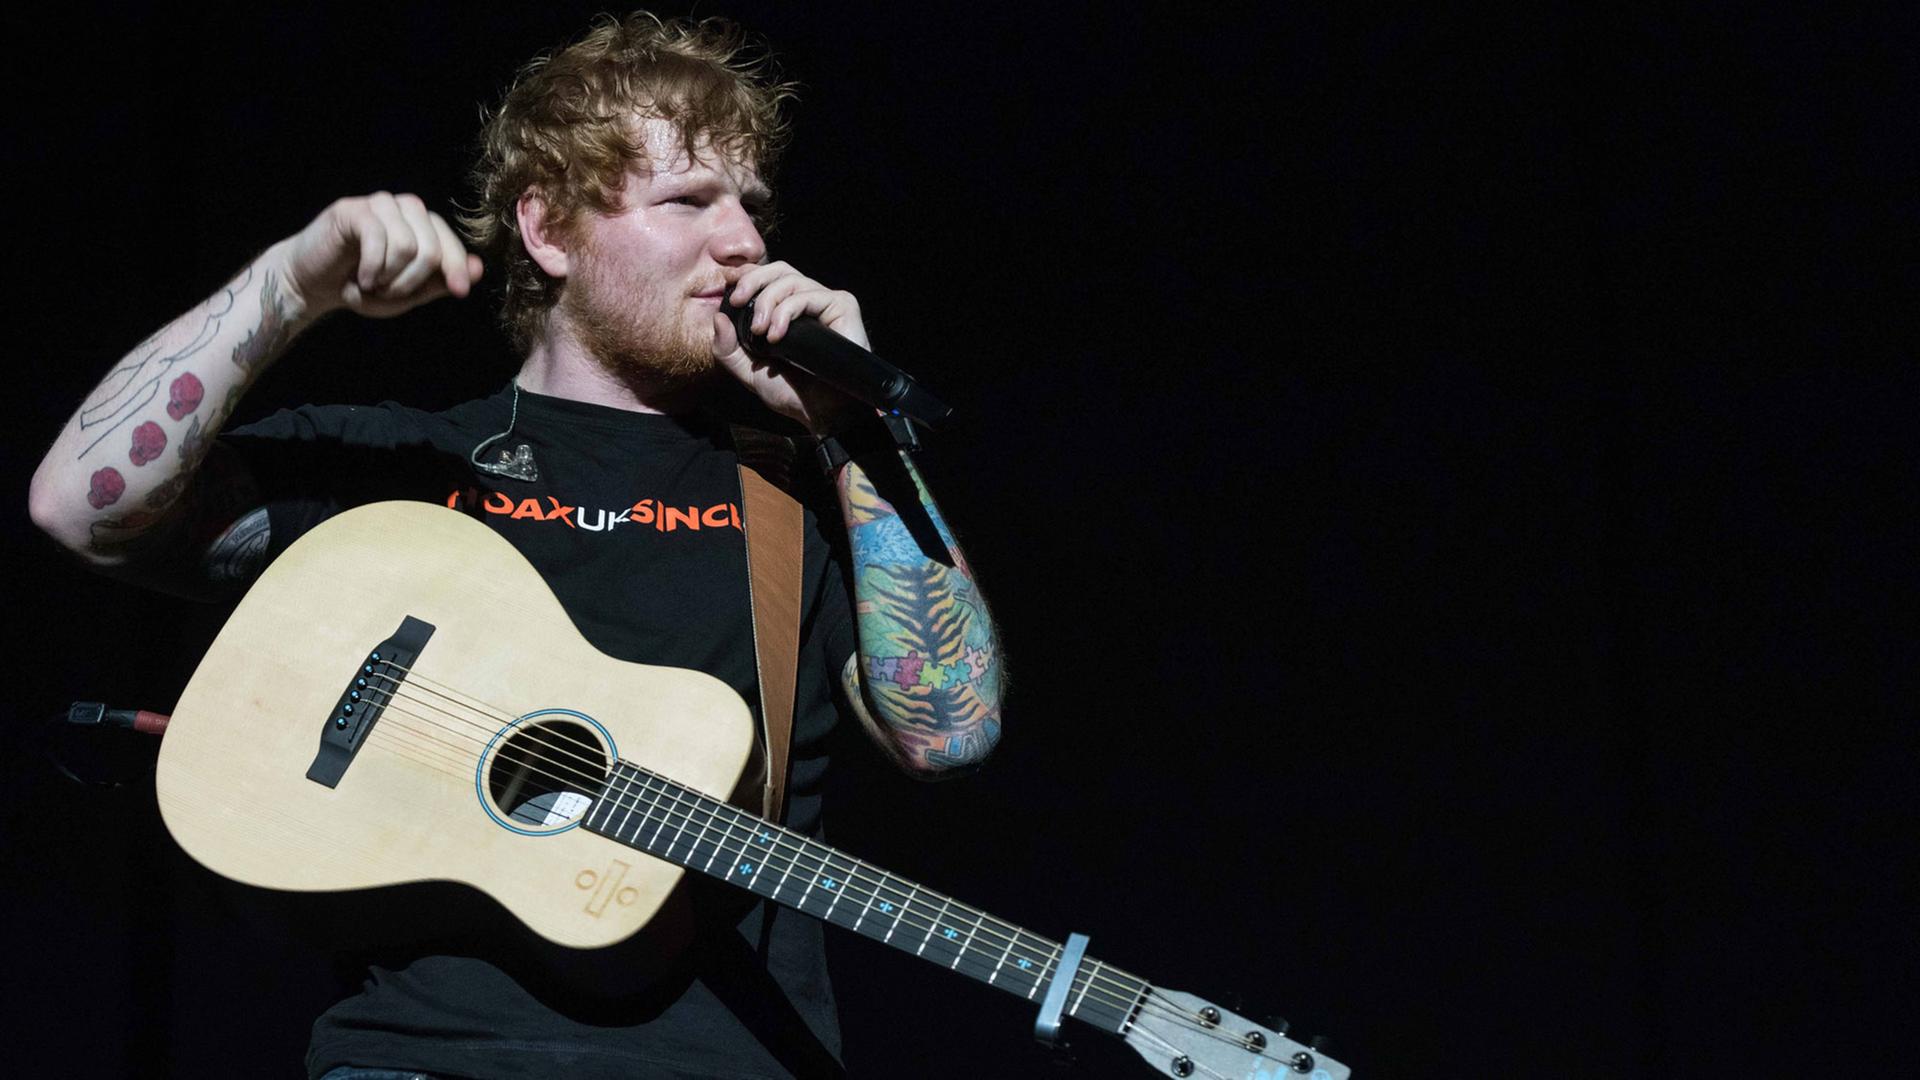 Sänger Ed Sheeran mit einer Gitarre und Mikrofon in der Hand während eines Konzertes